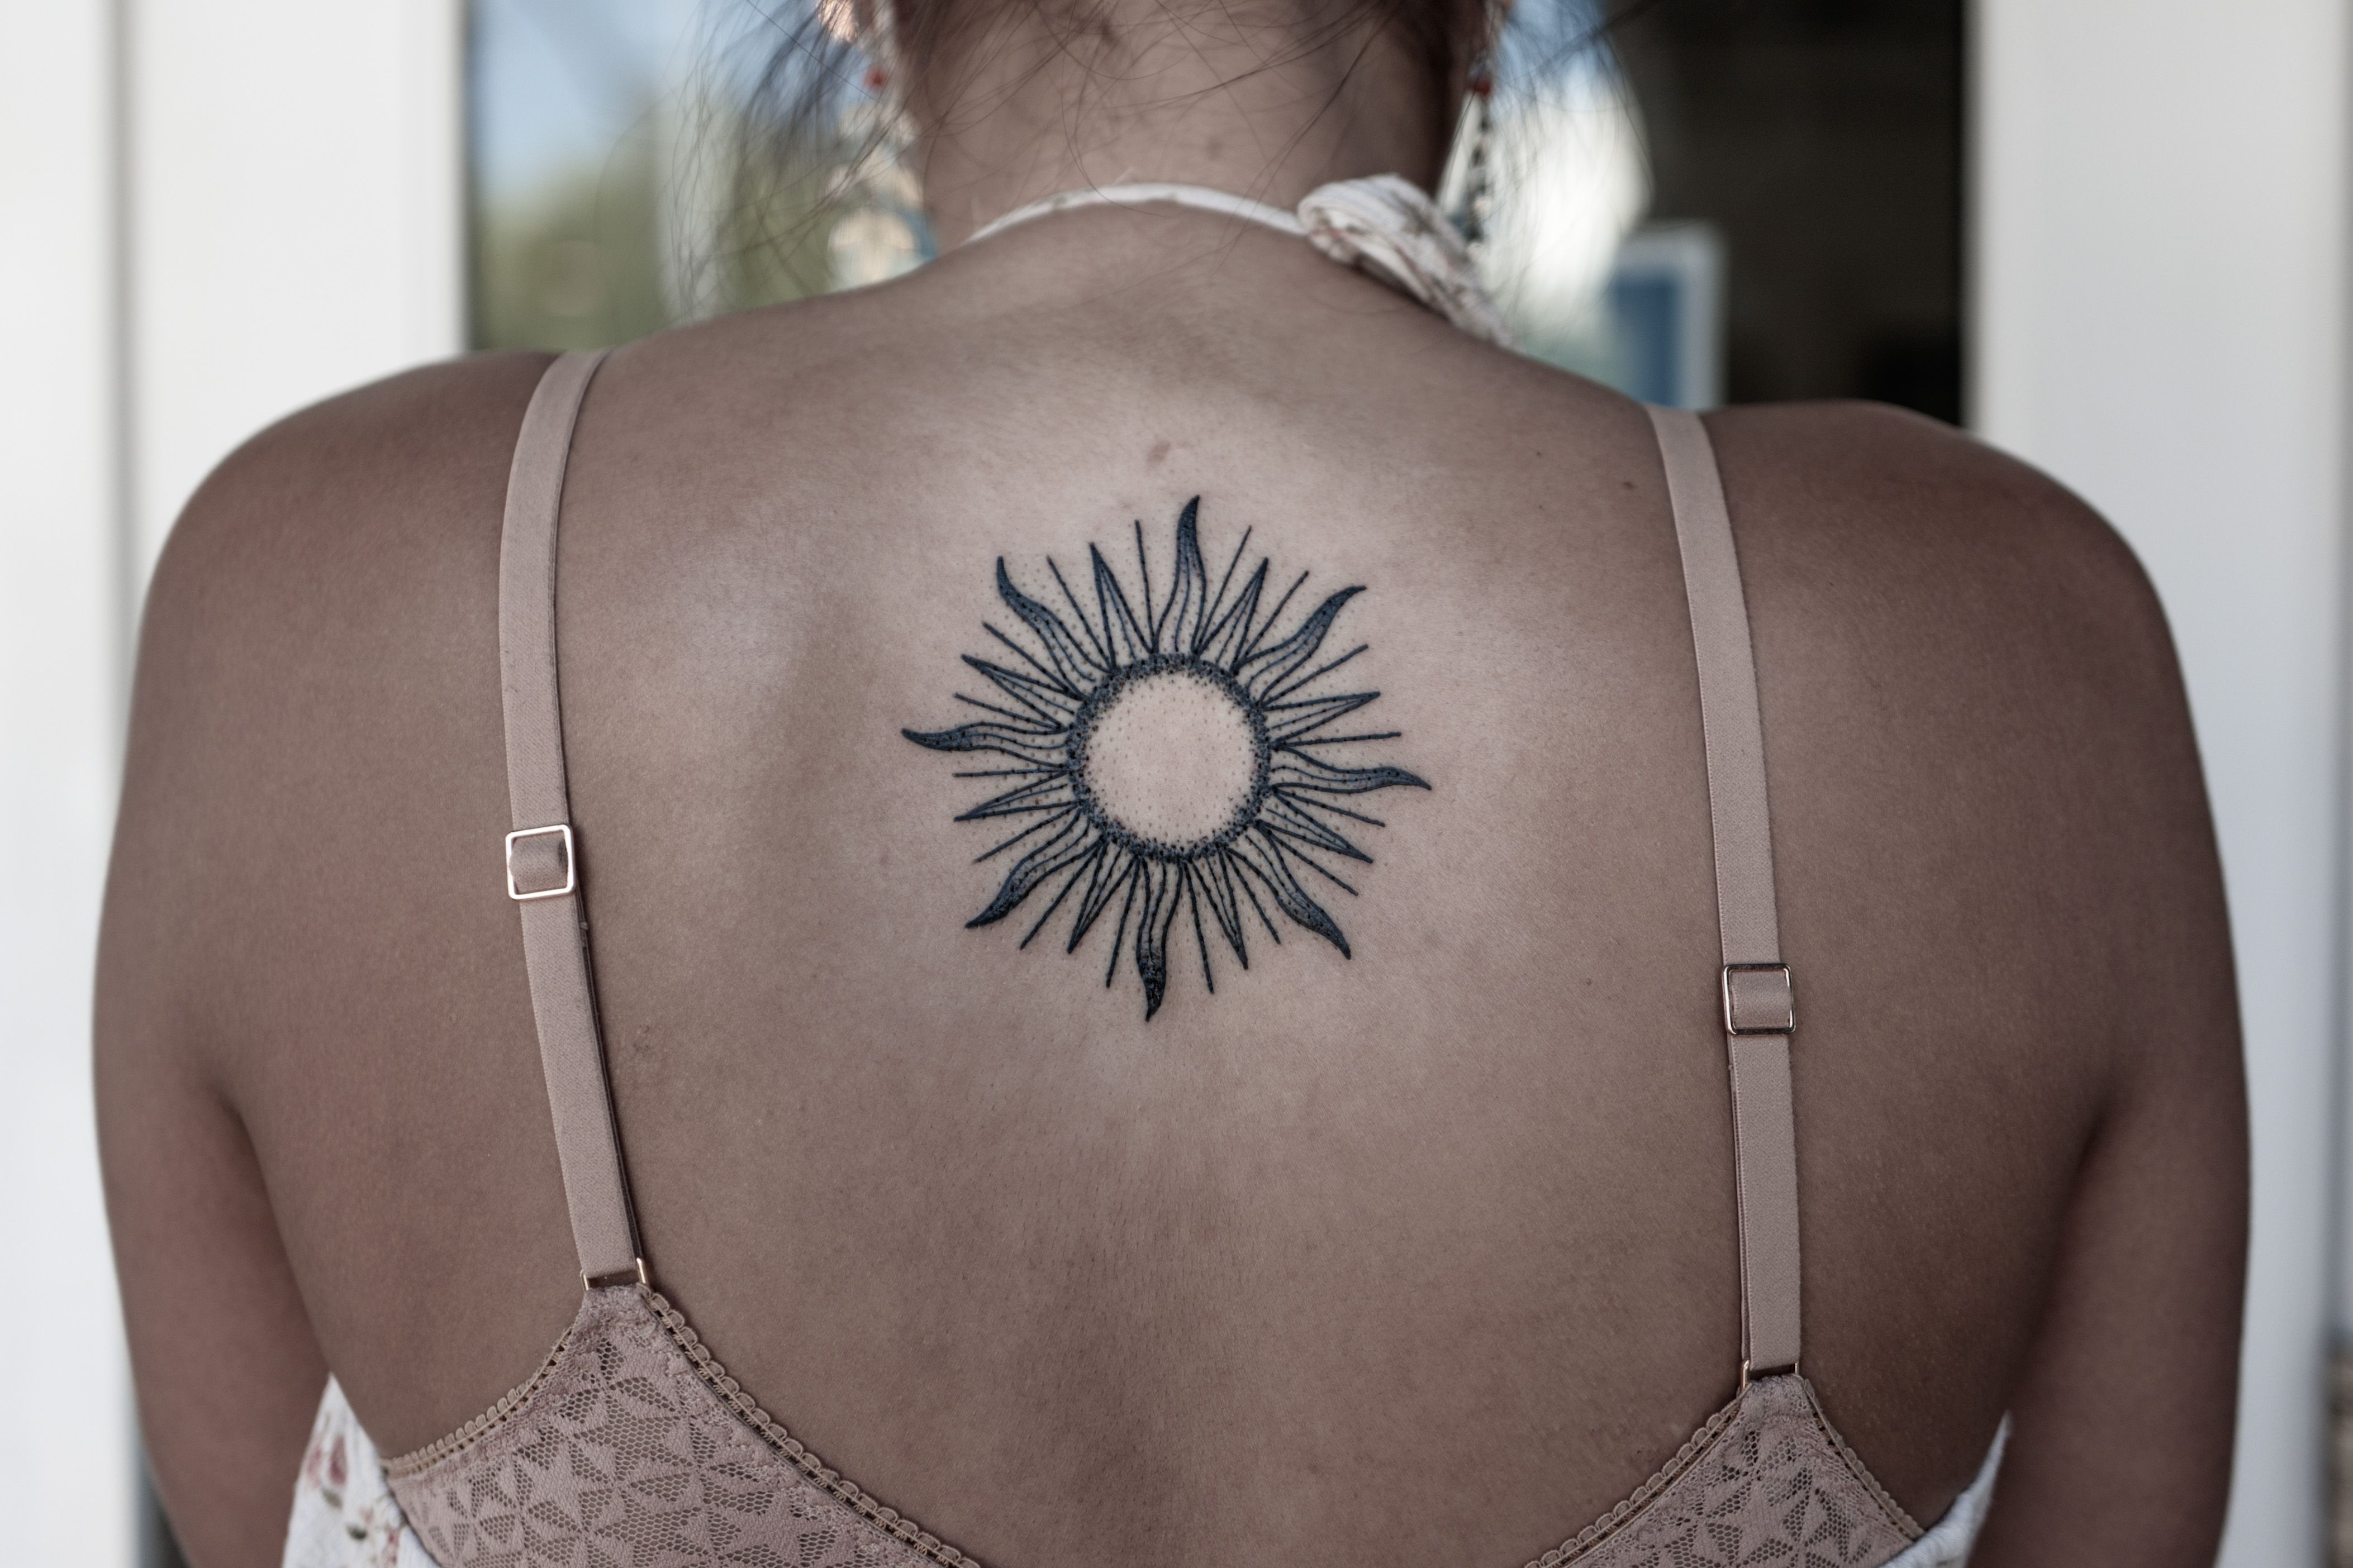 Tattoo uploaded by Justine Morrow  Back tattoo by parkkaro parkkaro  linework sun backtattoo  Tattoodo